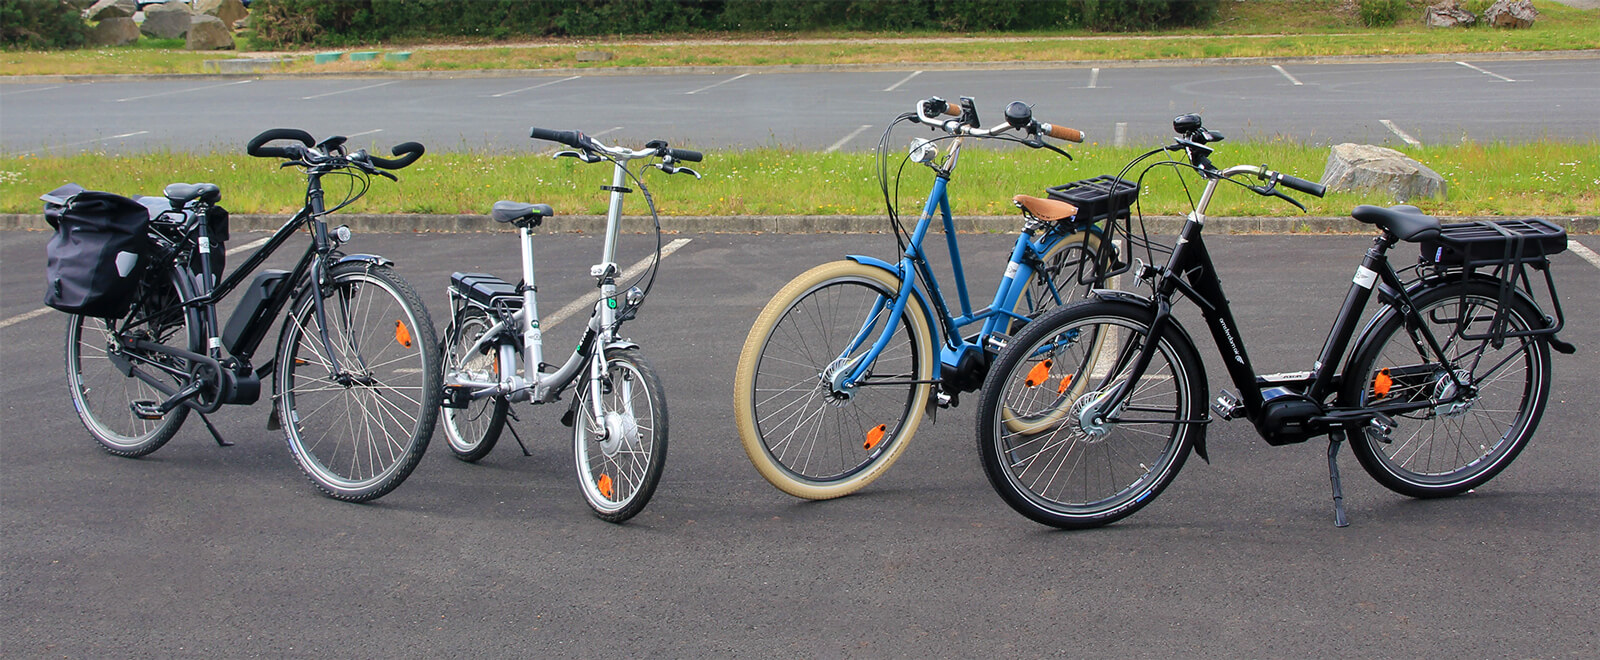 4 modèles de vélos à assistance électriques vendus par Amsterdam Air